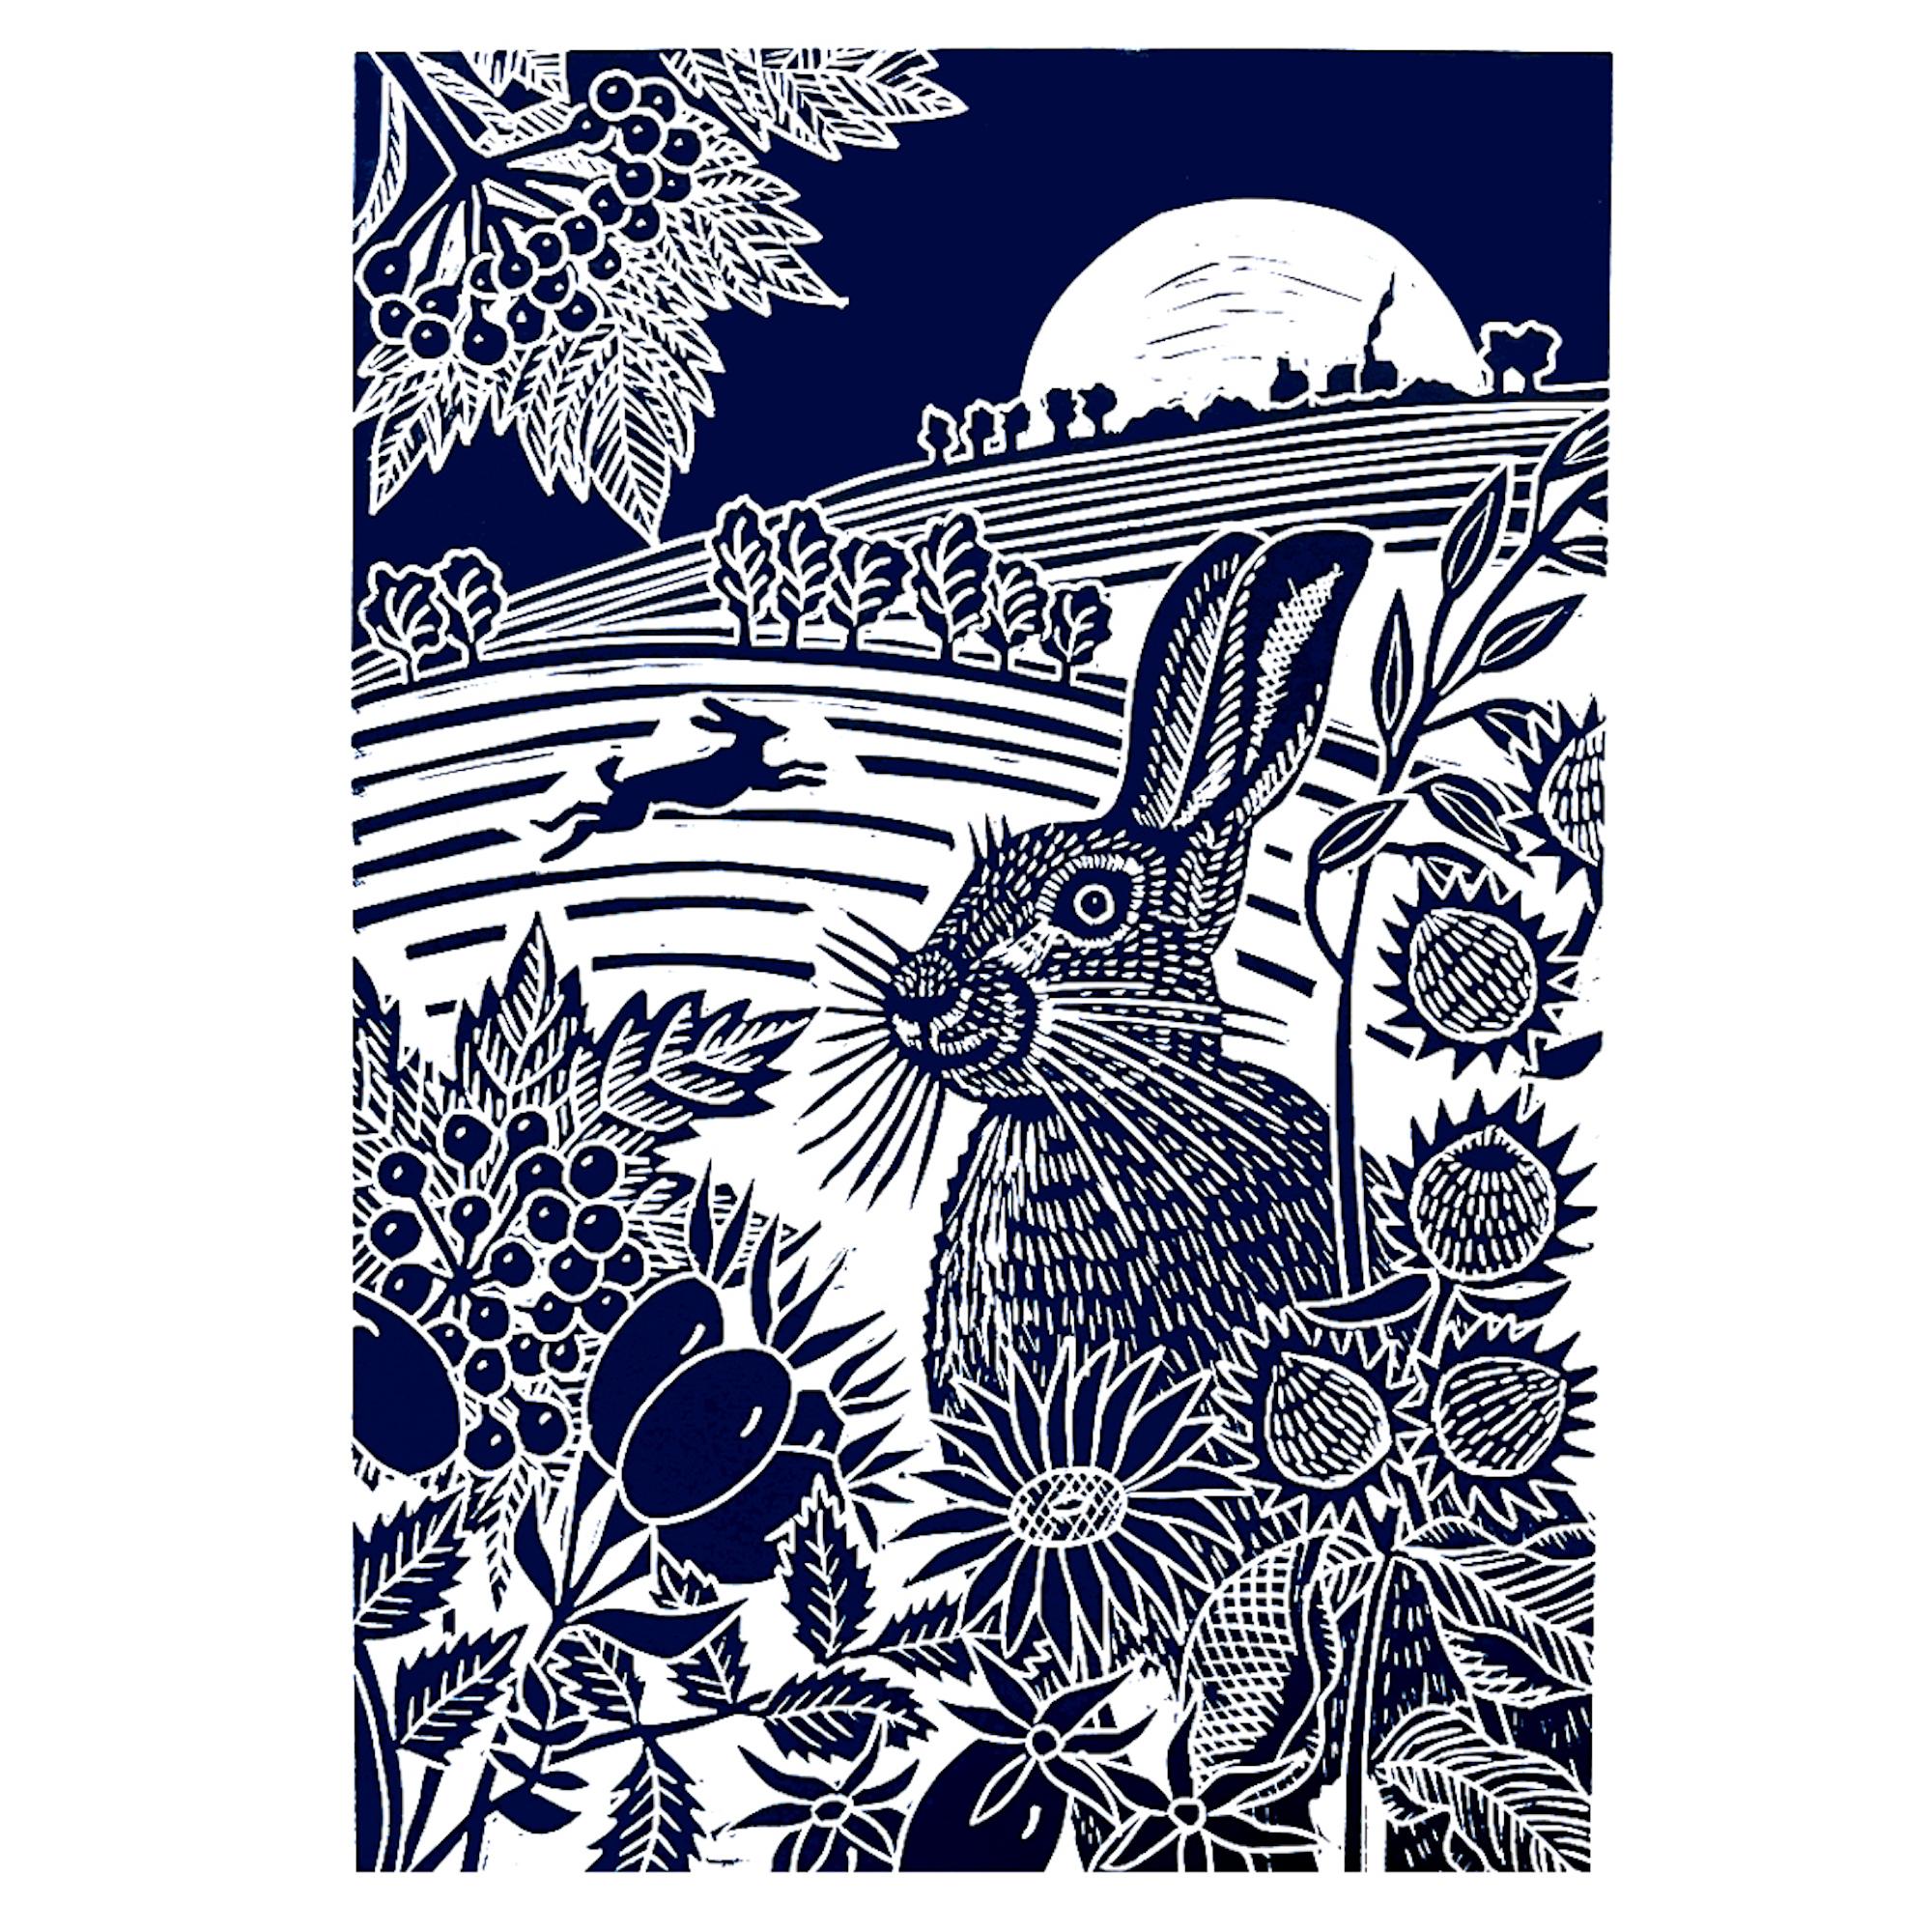 Harvest Moon Hares, Tierkunst, minimalistische Kunstwerke, Linolschnittdruck, Hare-Kunst